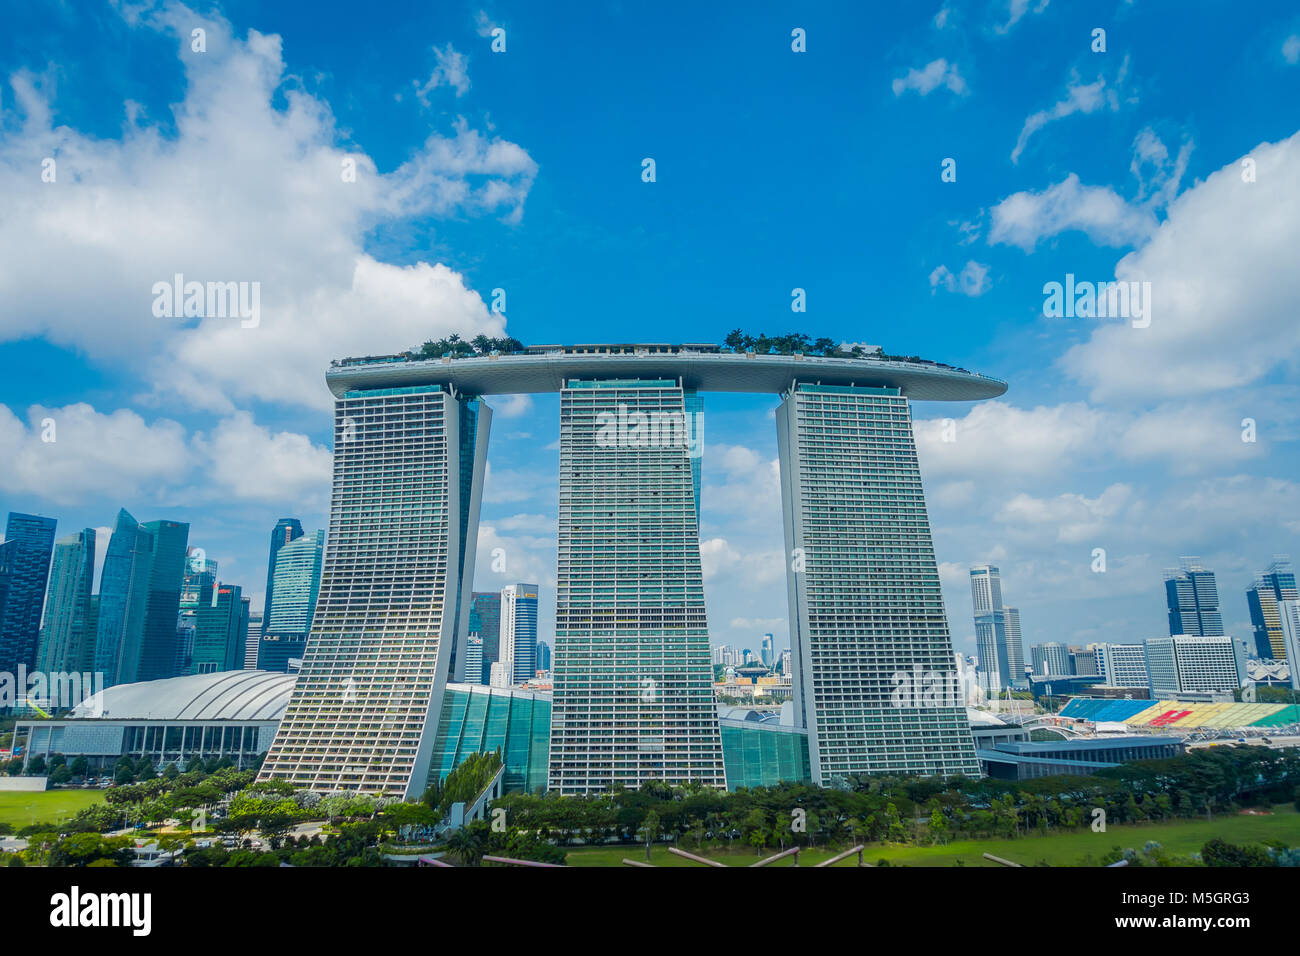 SINGAPORE, Singapore - 30 gennaio 2018: bellissimo paesaggio delle tre torri della Marina Bay Sands Ressort contro un cielo nuvoloso, i mondi più costoso casino standalone al momento dell'apertura, nel 2010, a Singapore Foto Stock